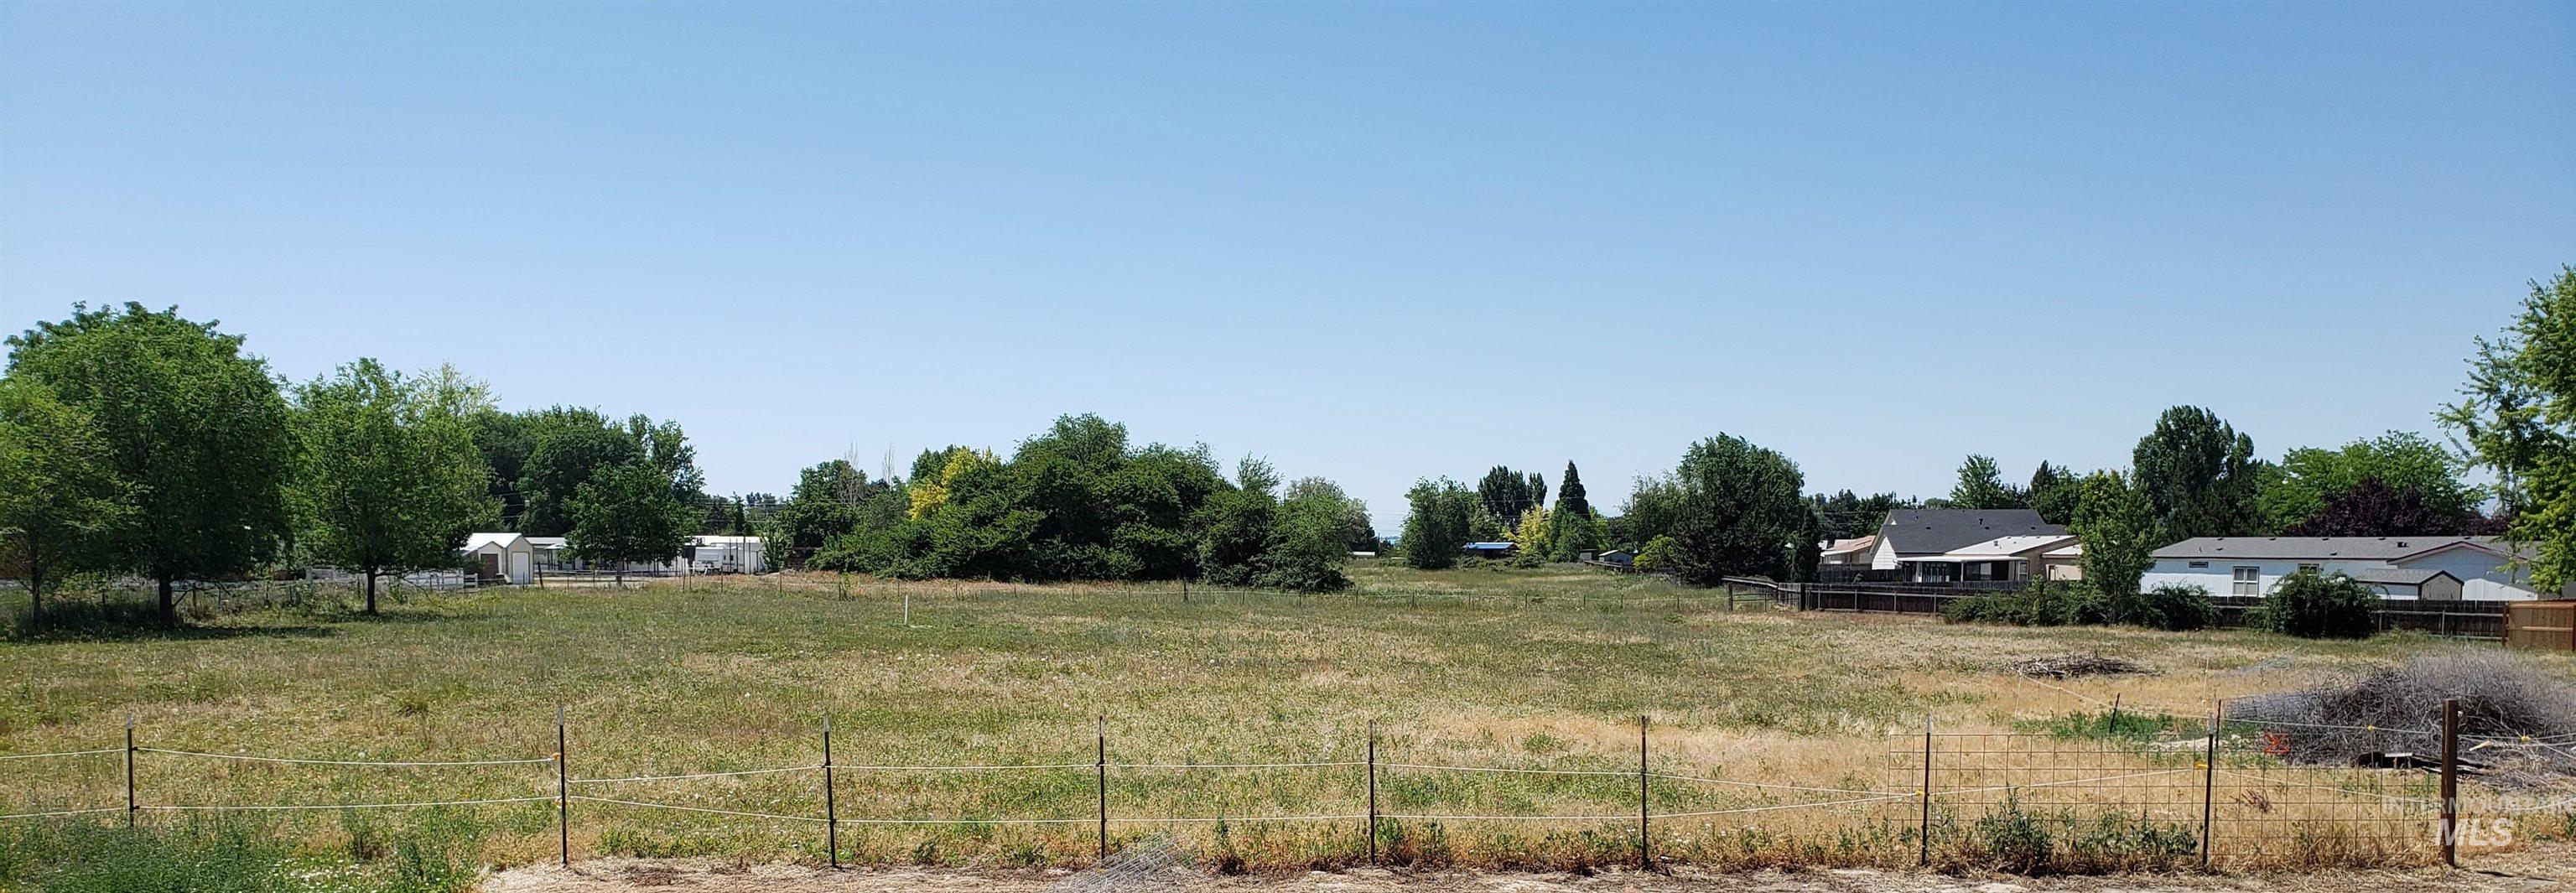 TBD Moss Lane, Nampa, Idaho 83651, Land For Sale, Price $1,135,700,MLS 98908517